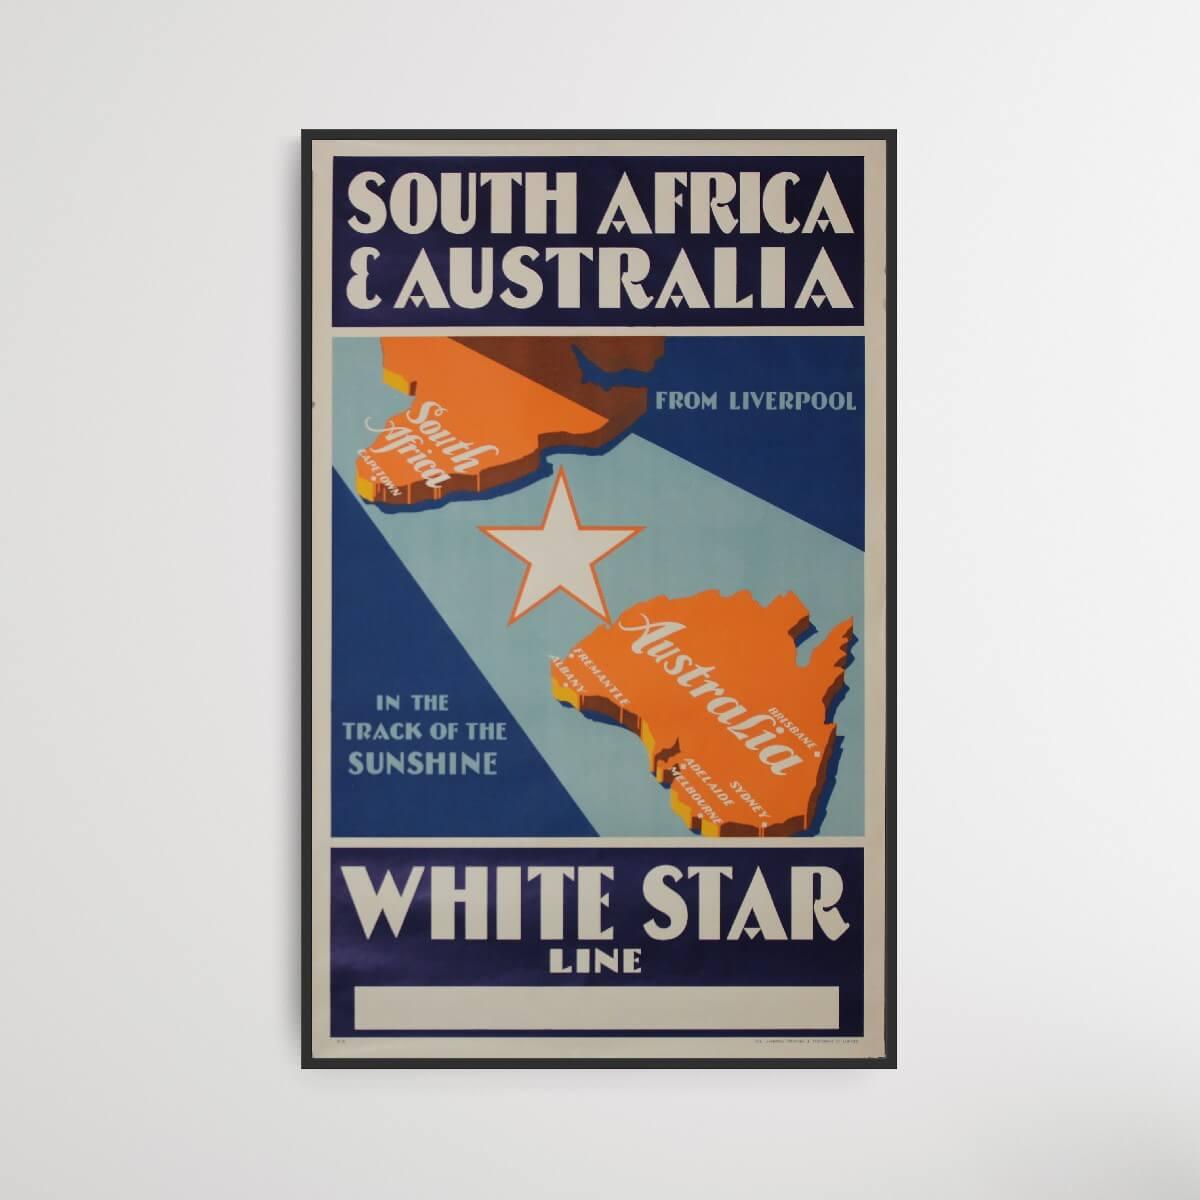 Liverpool-Sydafrika-Australien - White Star Line